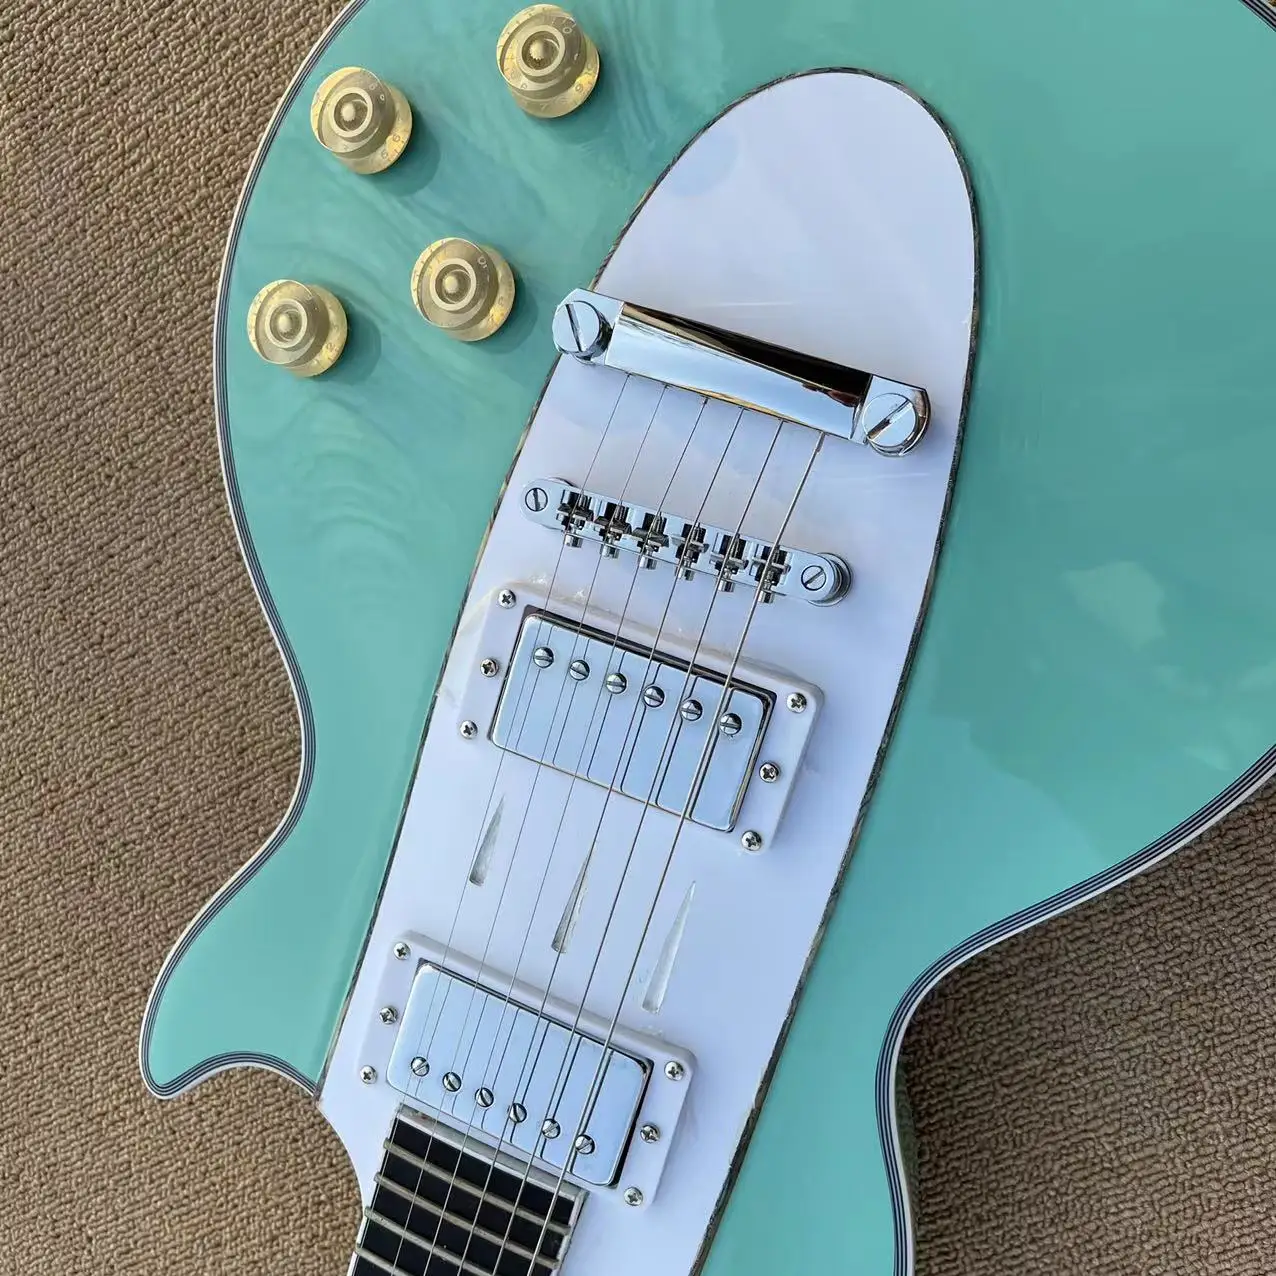 Cinci string machiaj facial comemorative chitara electrica, lumina albastru corp, LP pod piesele albe, pot fi modificate și personalizate Imagine 2